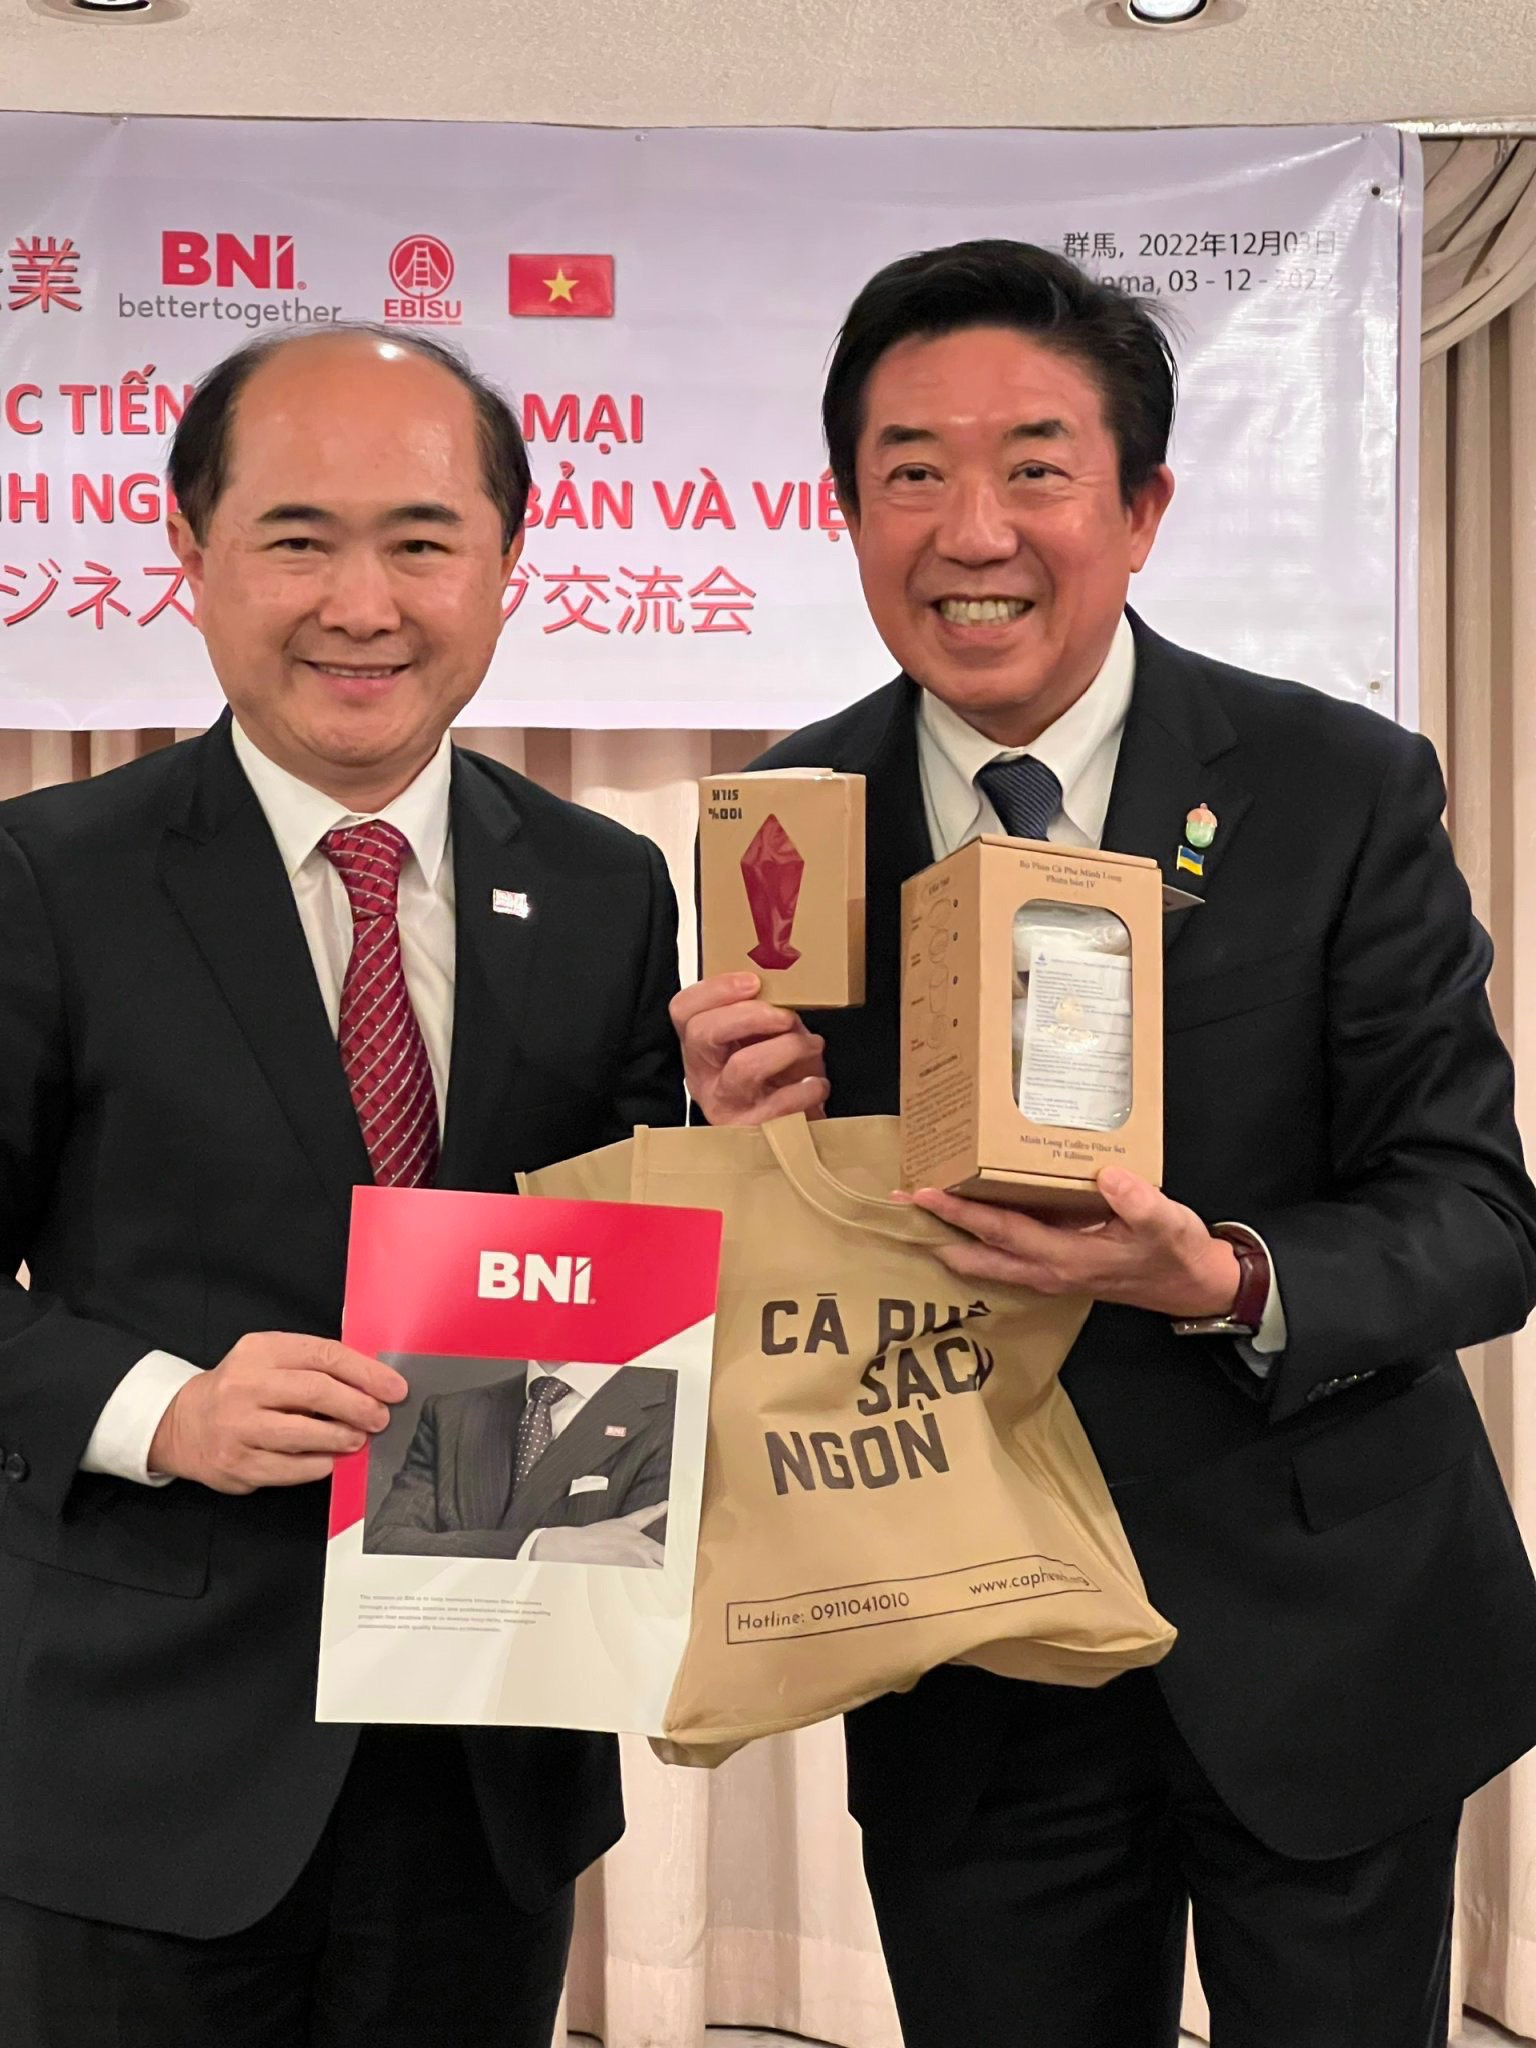 Ông Hồ Quang Minh - Chủ tịch BNI Việt Nam giới thiệu cafe sạch Việt Nam đến ngài Thị Trưởng - ông RYU YAMAMOTO.